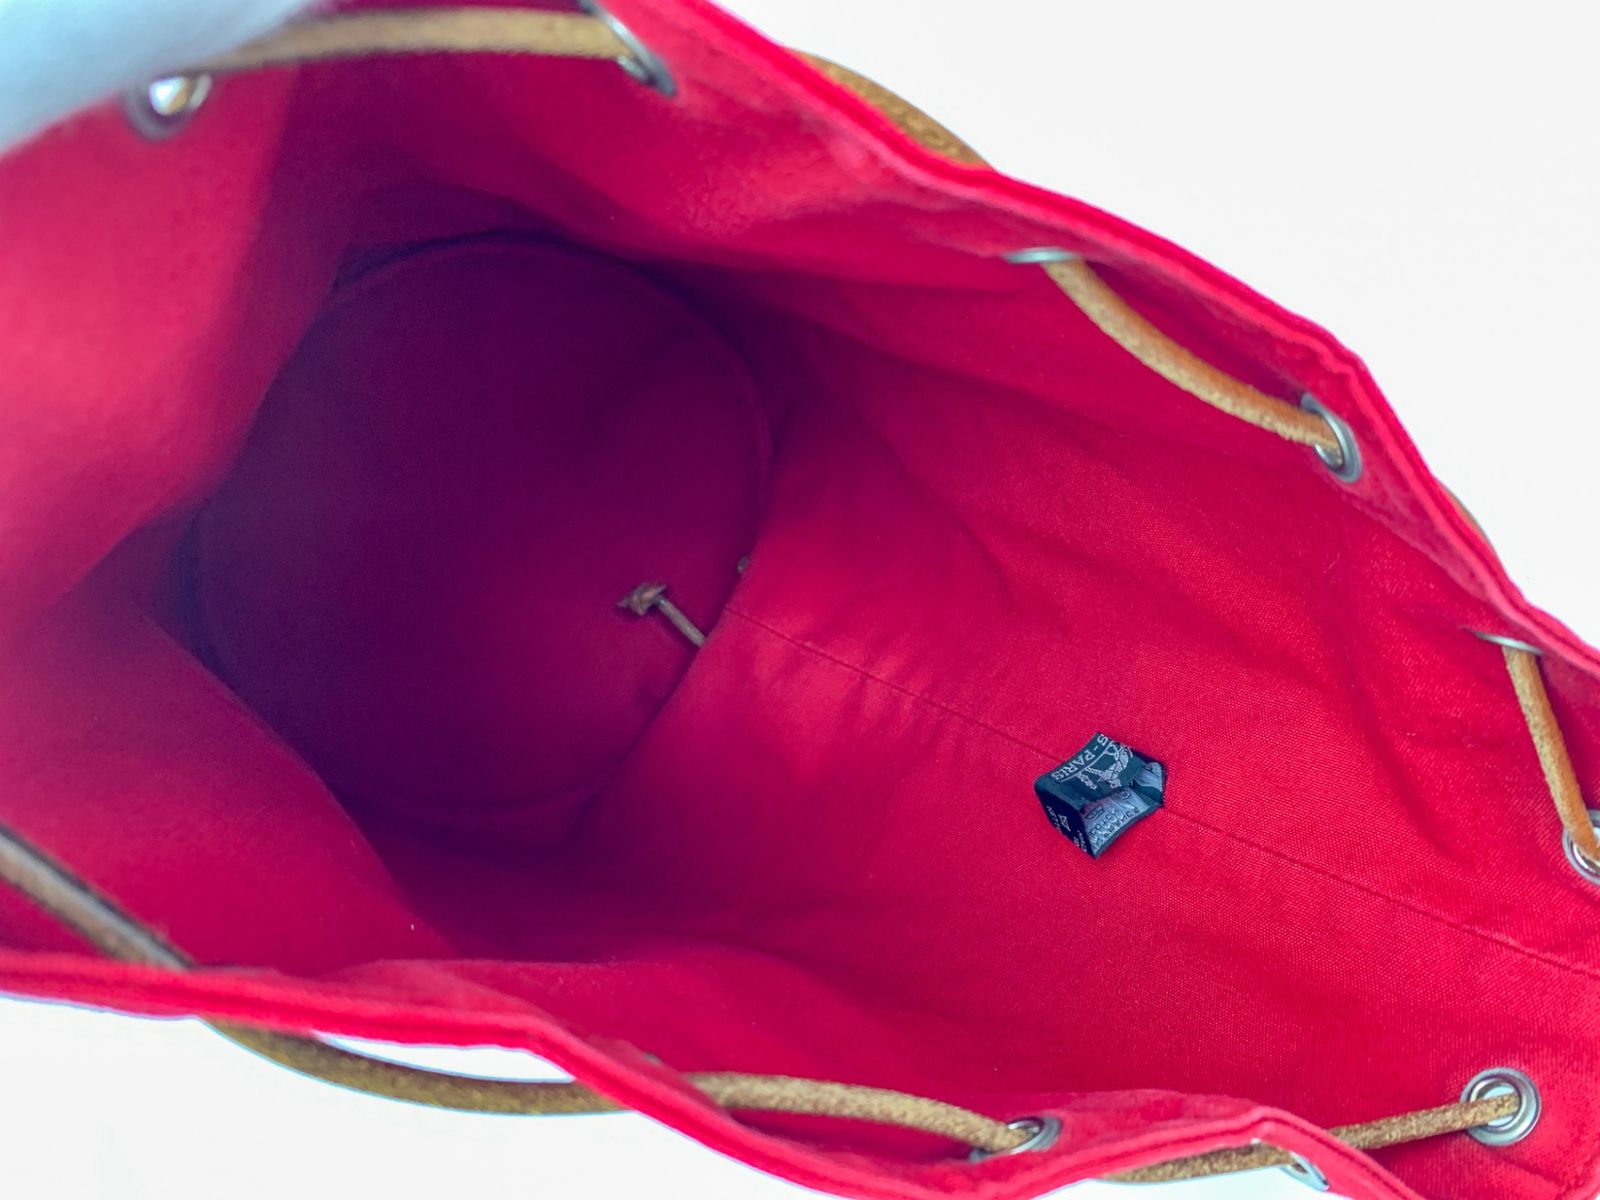 HERMES エルメス 赤 レッド ポロションミミルGM 巾着型 ショルダーバッグ バック 鞄 カバン ブランド - メルカリ